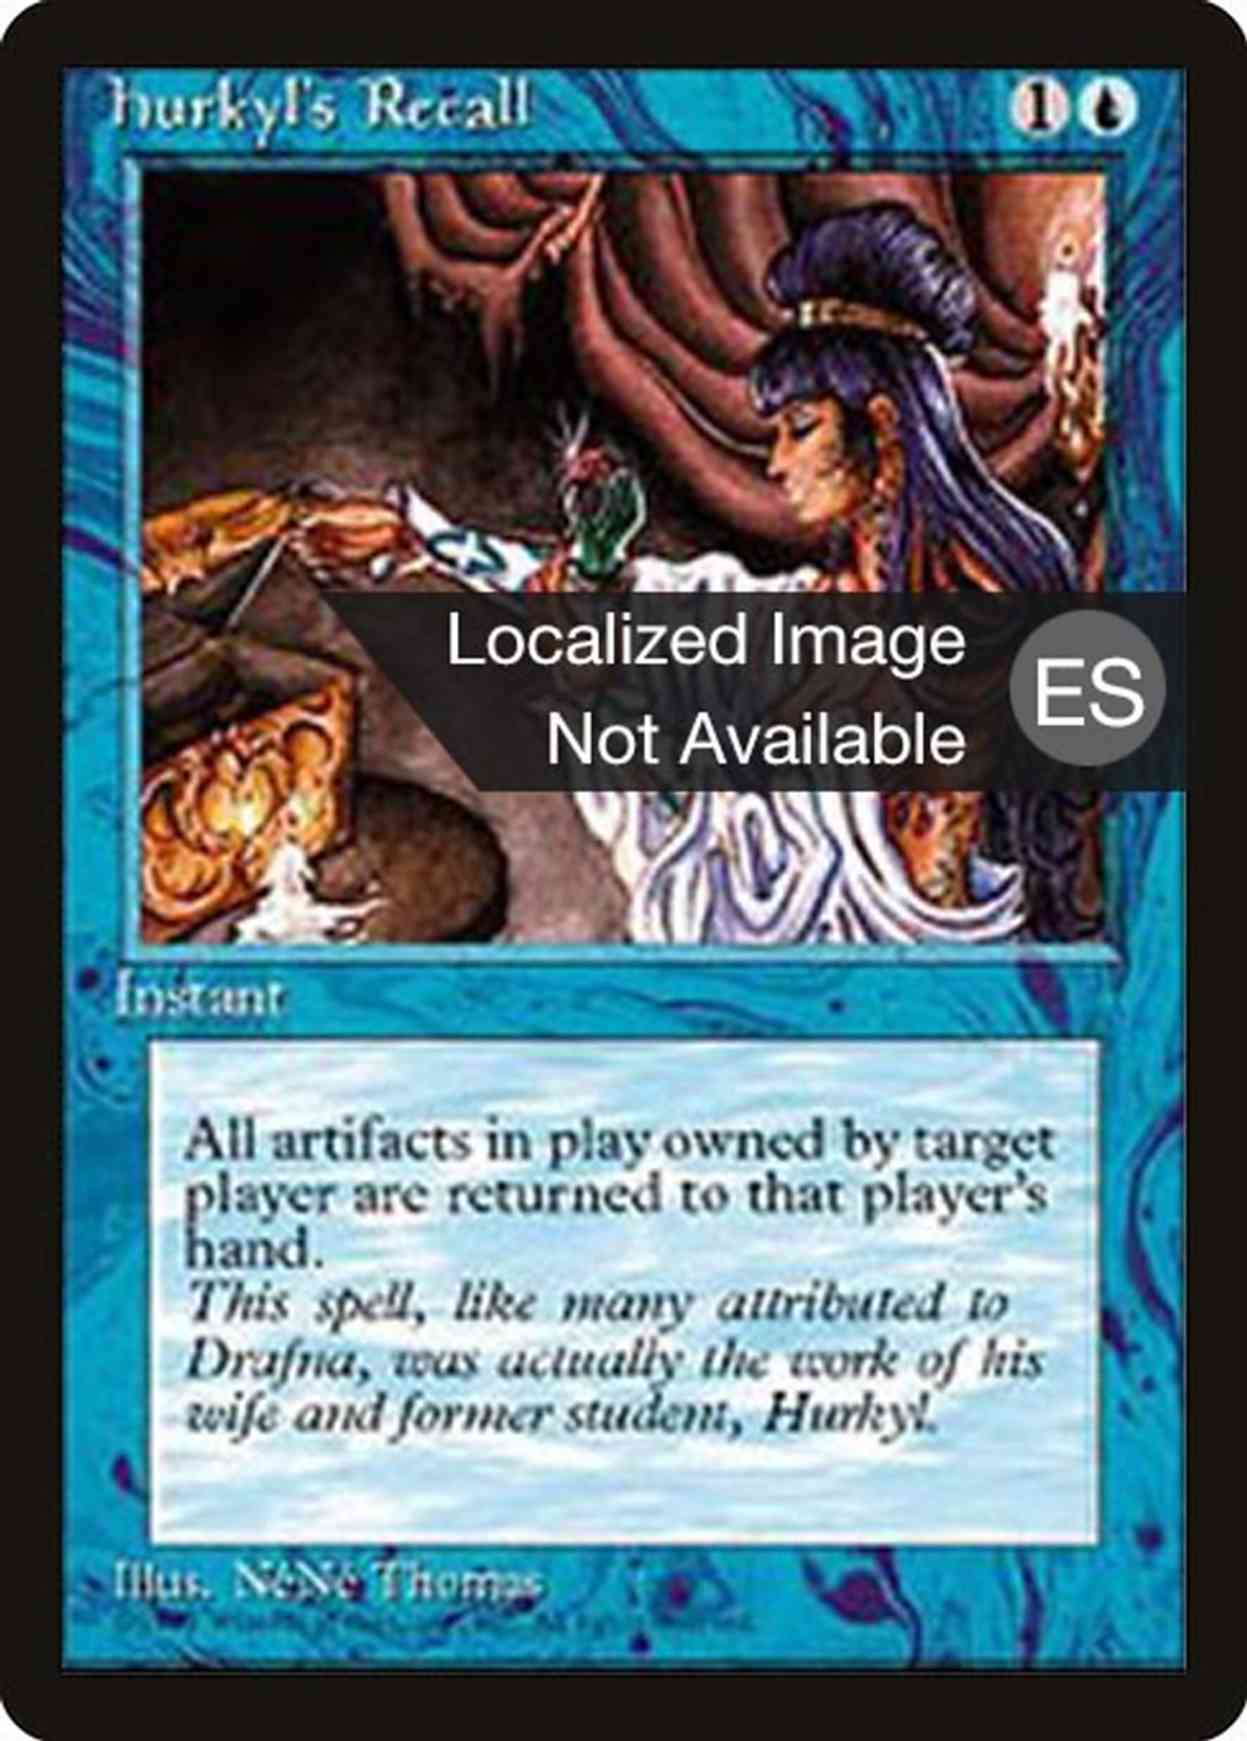 Hurkyl's Recall magic card front